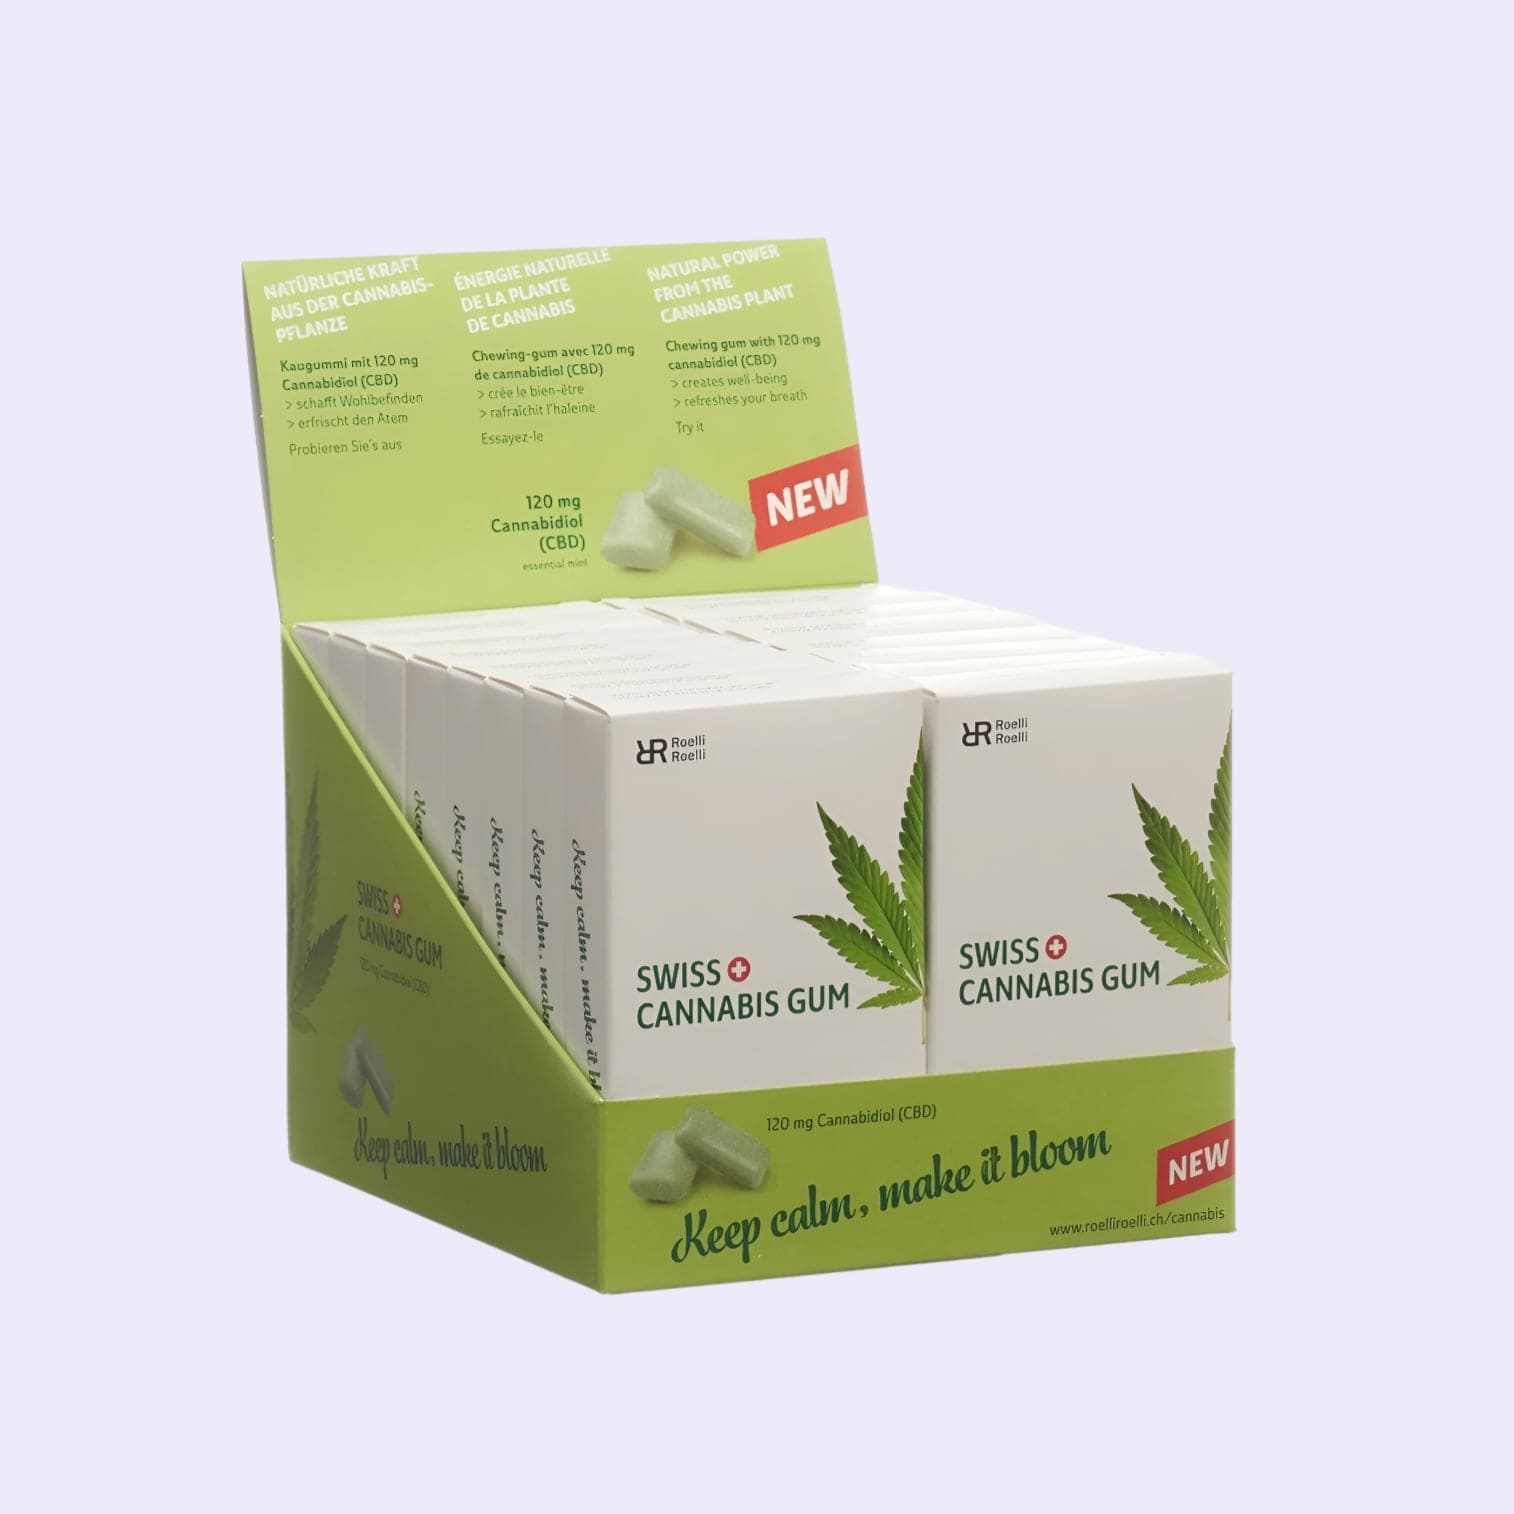 Diese Bild zeigt den Swiss Cannabis Gum 120mg CBD 16er Display von der Firma Roelli